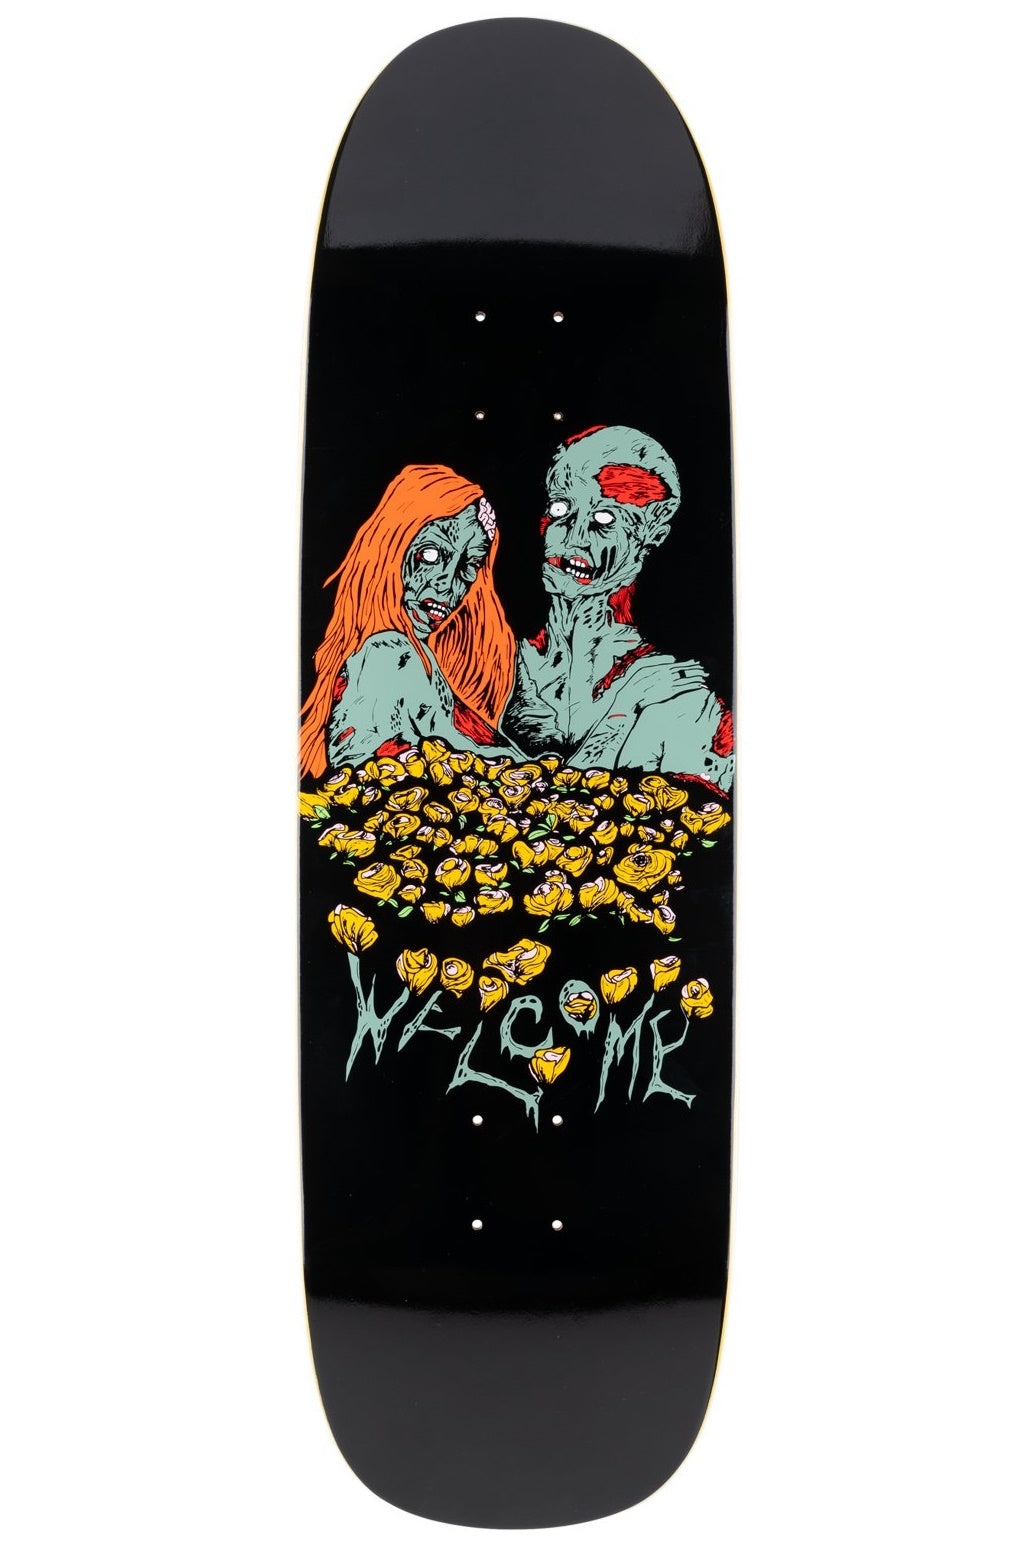 ยินดีต้อนรับ Zombie Love บน Boline Deck 9.25"